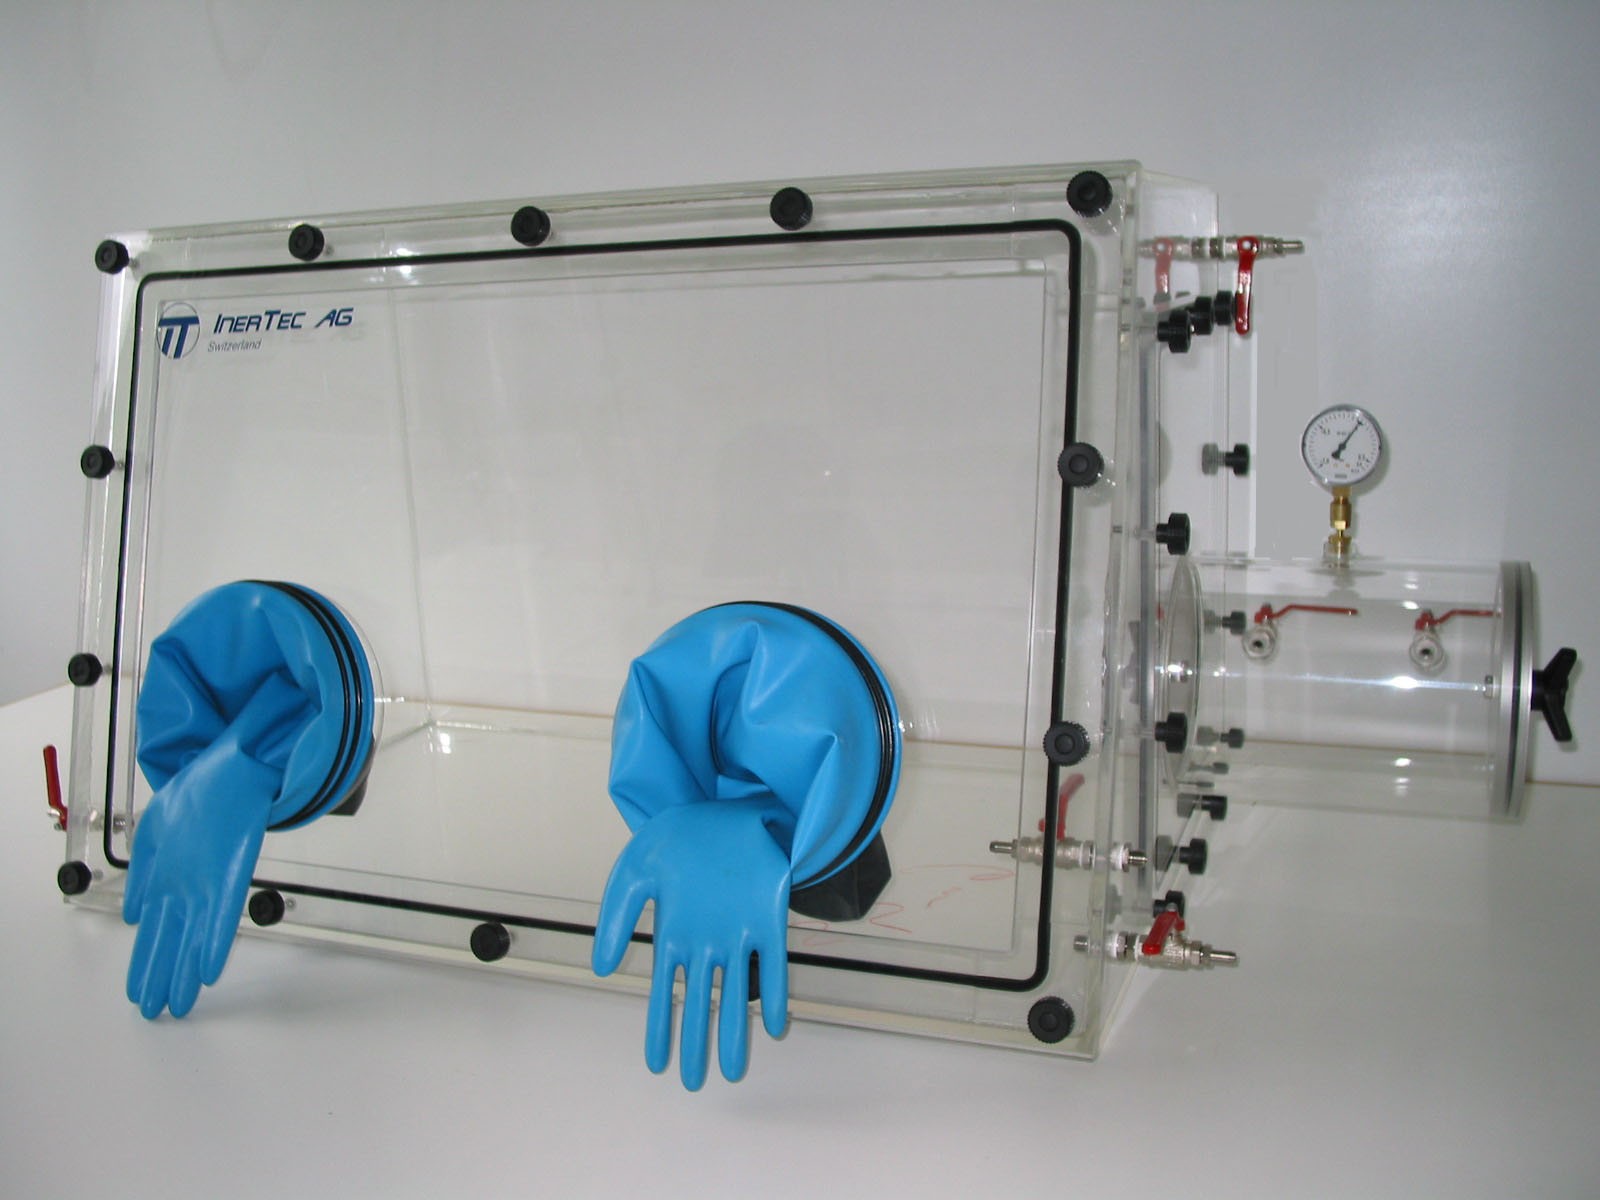 Glovebox aus Acryl> Gasbefüllung: Spülautomatik mit Druckregelung, Frontausführung: Schwenkbar nach oben, Seitenausführung: Rechteckschleuse Steuerung: Sauerstoffregler mit Feuchteanzeige